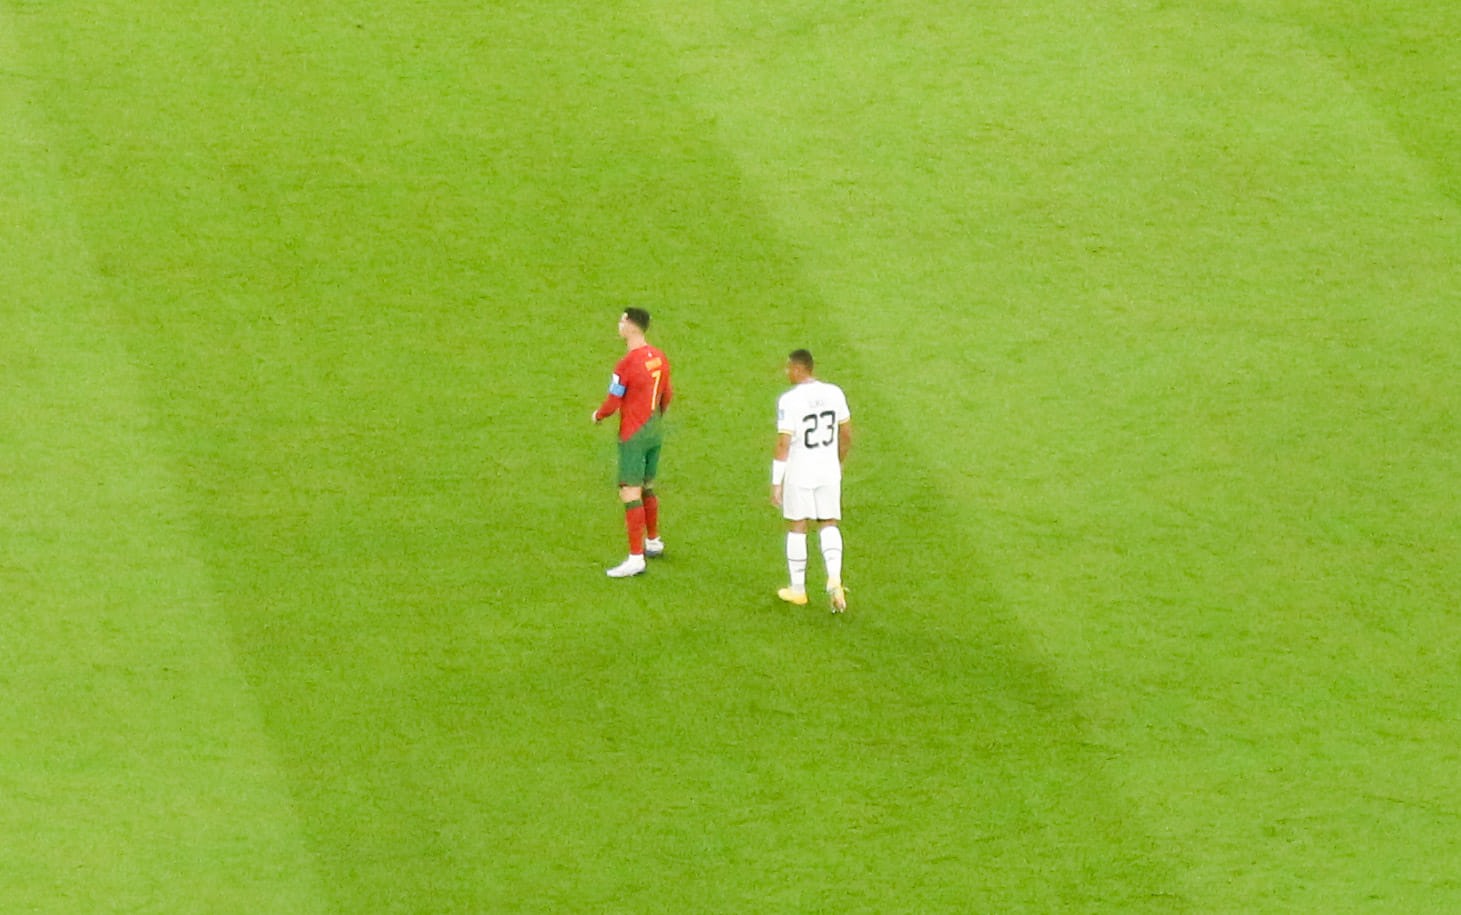 Vợ chồng anh Thành Trung được xem Cristiano Ronaldo thi đấu trên sân 974 trong ngày Bồ Đào Nha ra quân tại World Cup 2022. Năm 2018, anh Thành Trung cũng xem Bồ Đào Nha đá tại World Cup ở Nga. Ảnh: NVCC